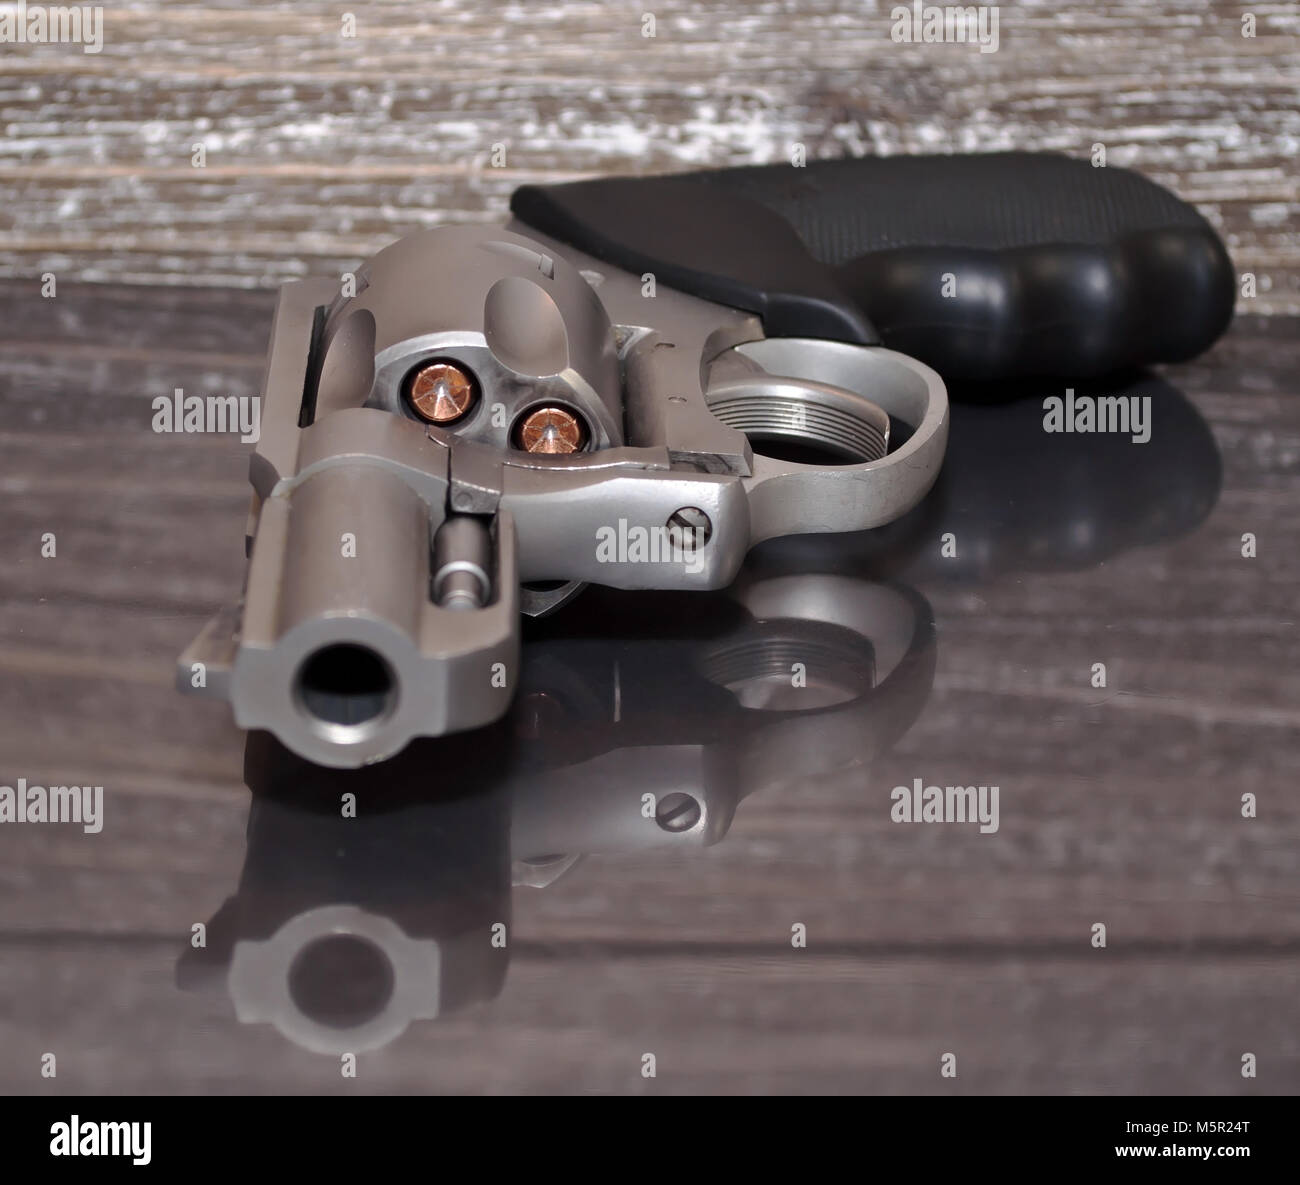 Un caricato, acciaio inossidabile .357 revolver Magnum su una superficie riflettente con un background in legno Foto Stock